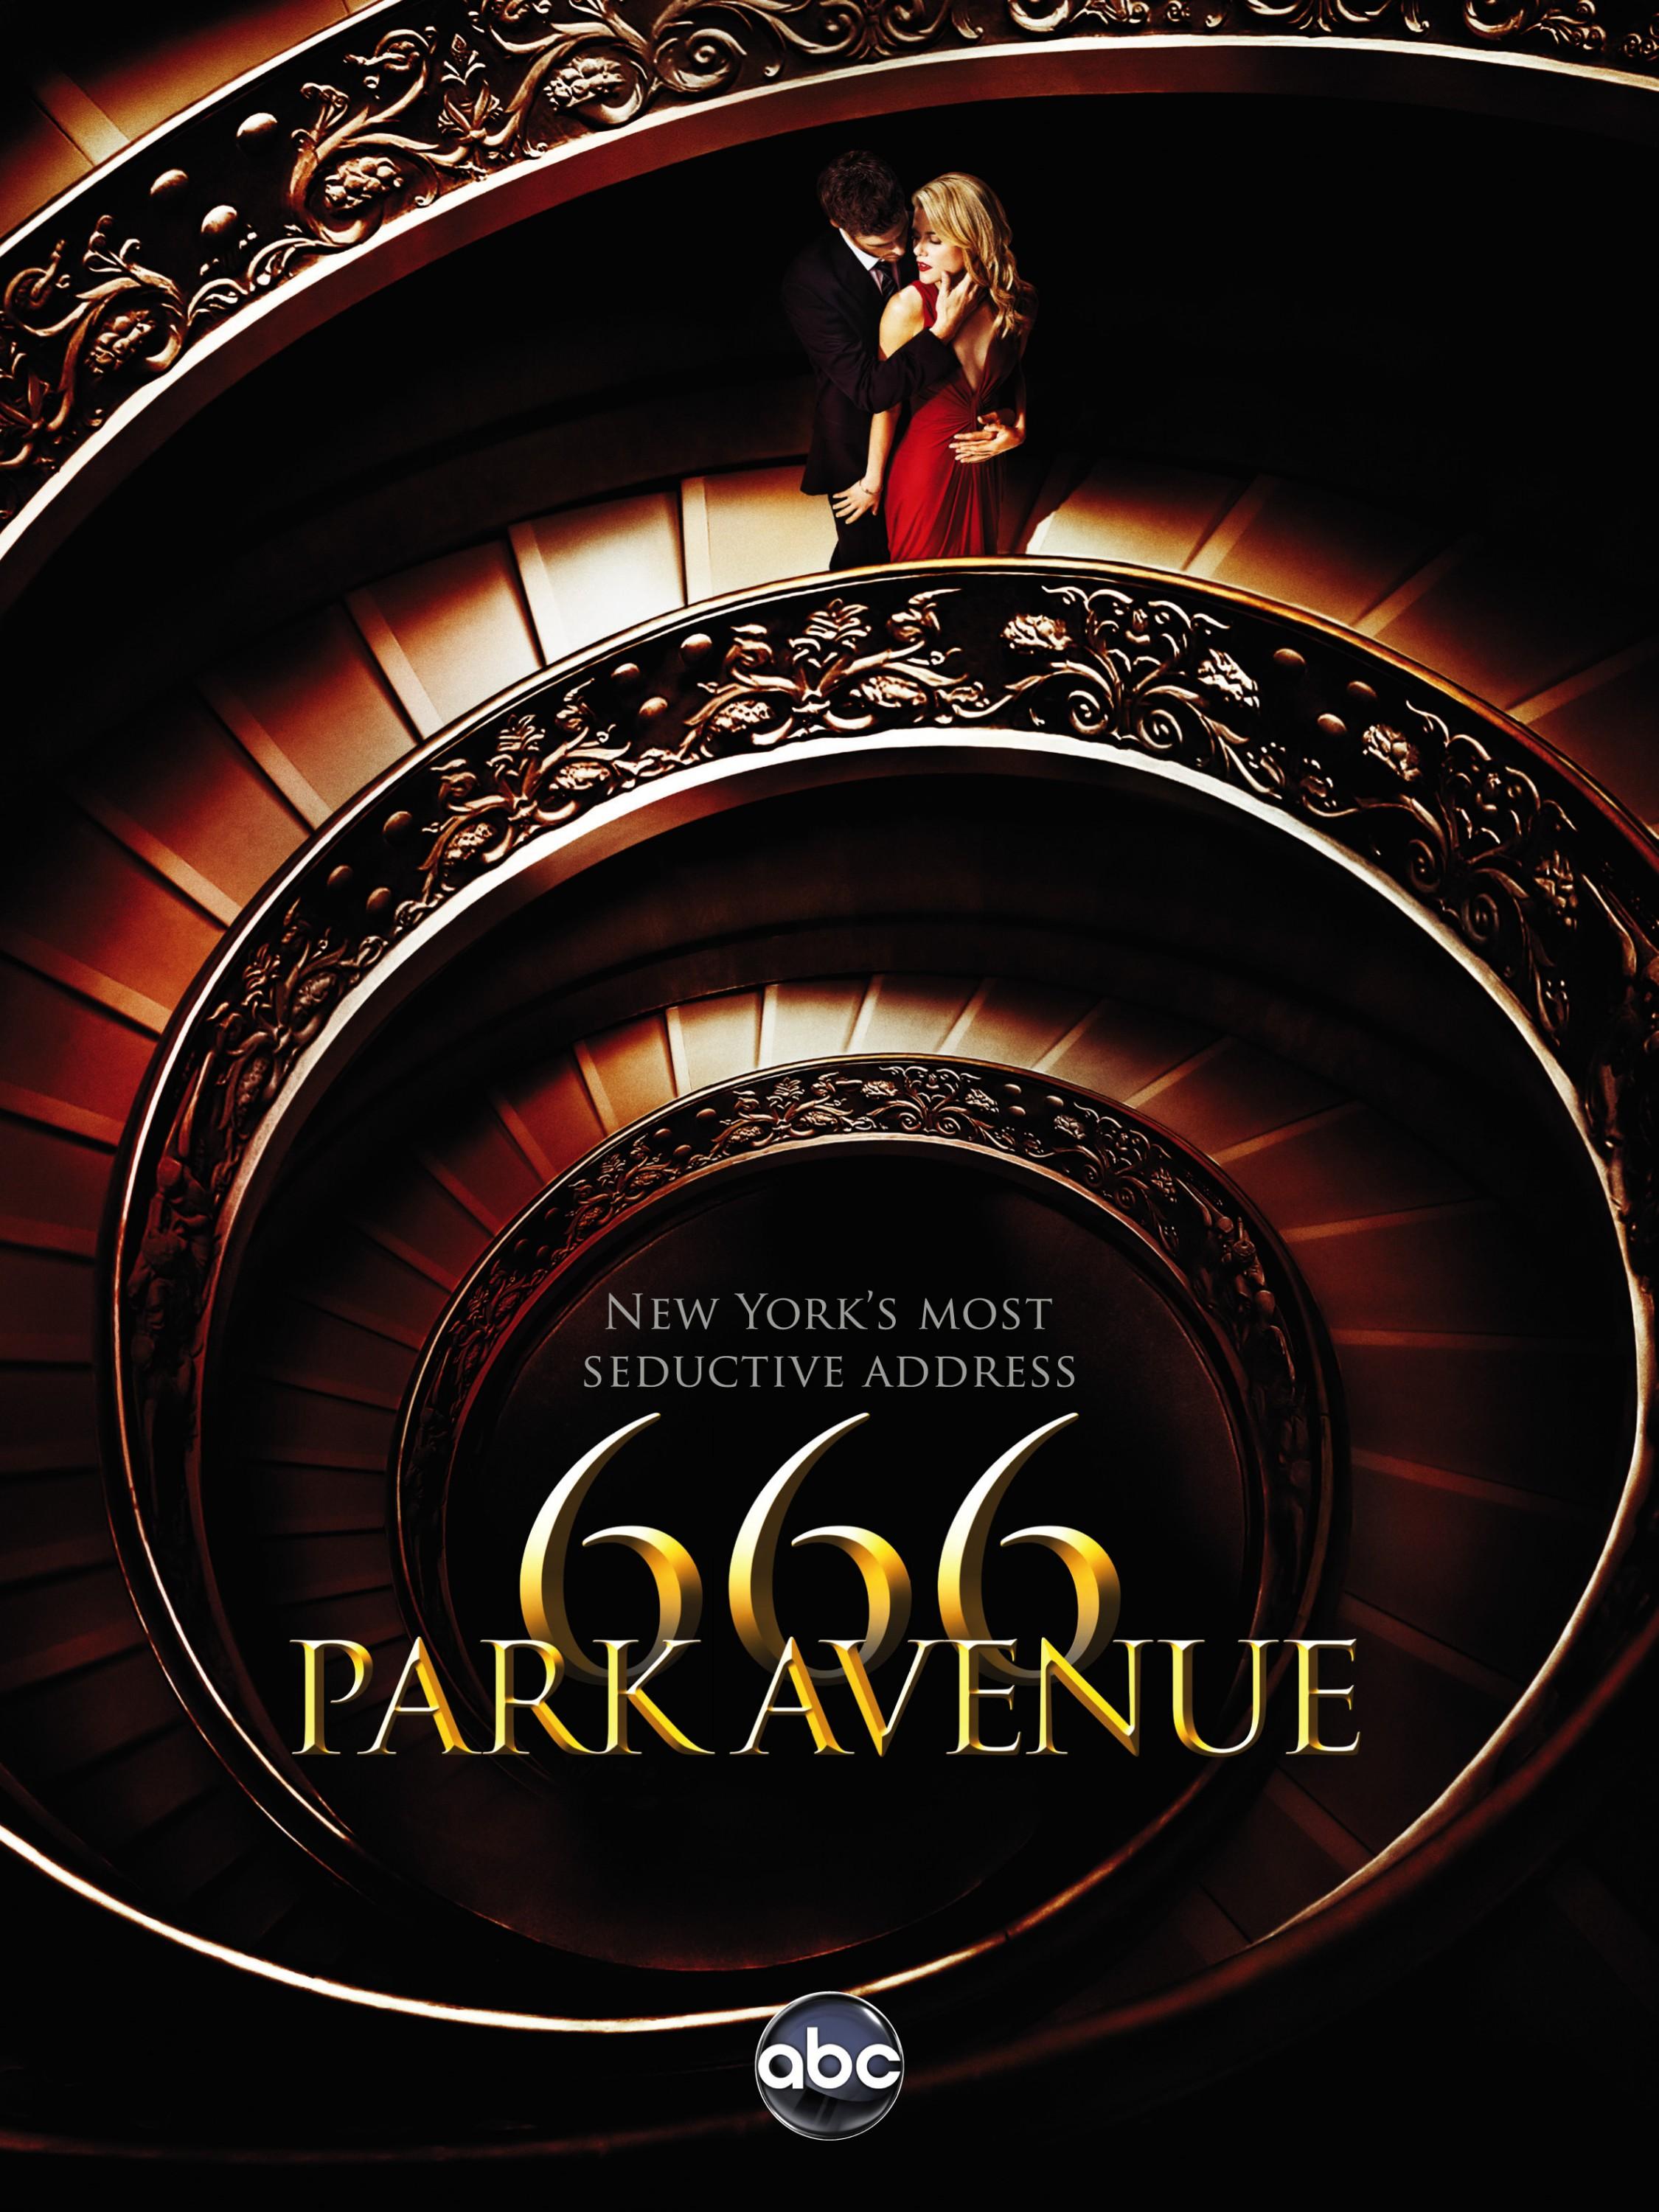 Постер фильма Парк Авеню, 666 | 666 Park Avenue